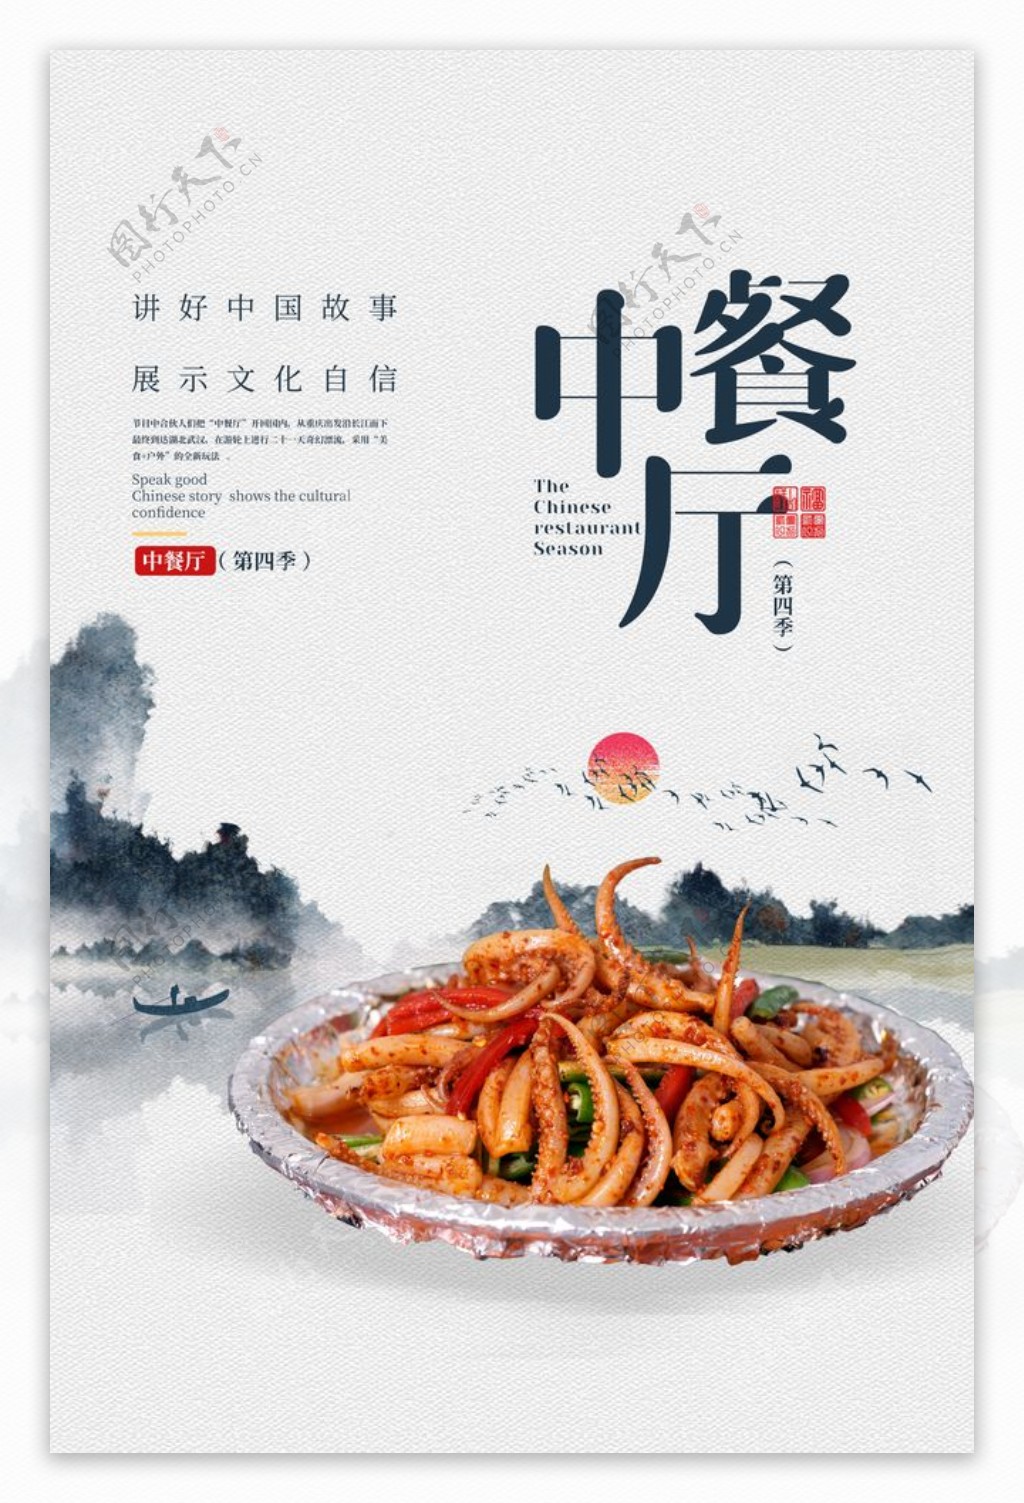 中餐厅美食食材宣传海报素材